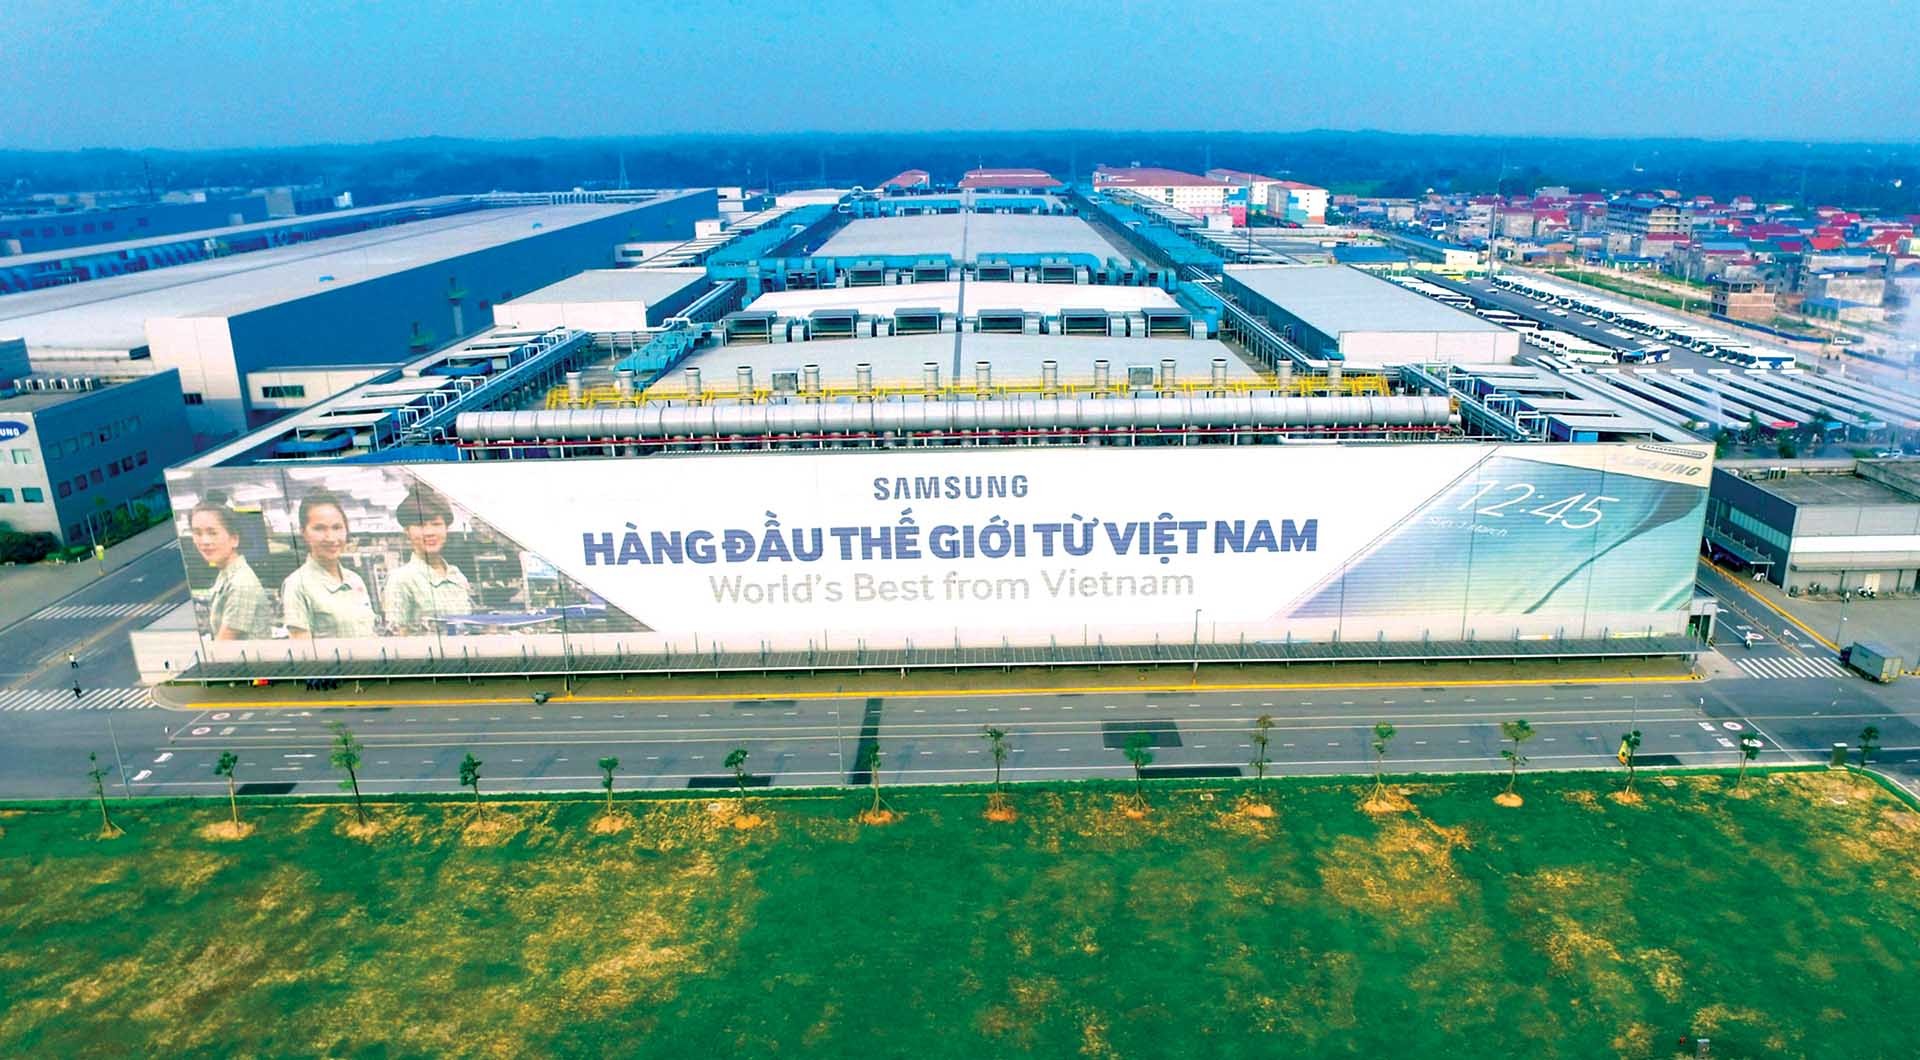 Samsung hiện nhà đầu tư trực tiếp nước ngoài lớn nhất ở Việt Nam, với 4 nhà máy lớn tại Bắc Ninh, Thái Nguyên và TP. HCM, tổng vốn đầu tư khoảng 22,4 tỷ USD. (Nguồn: Vietnamplus)